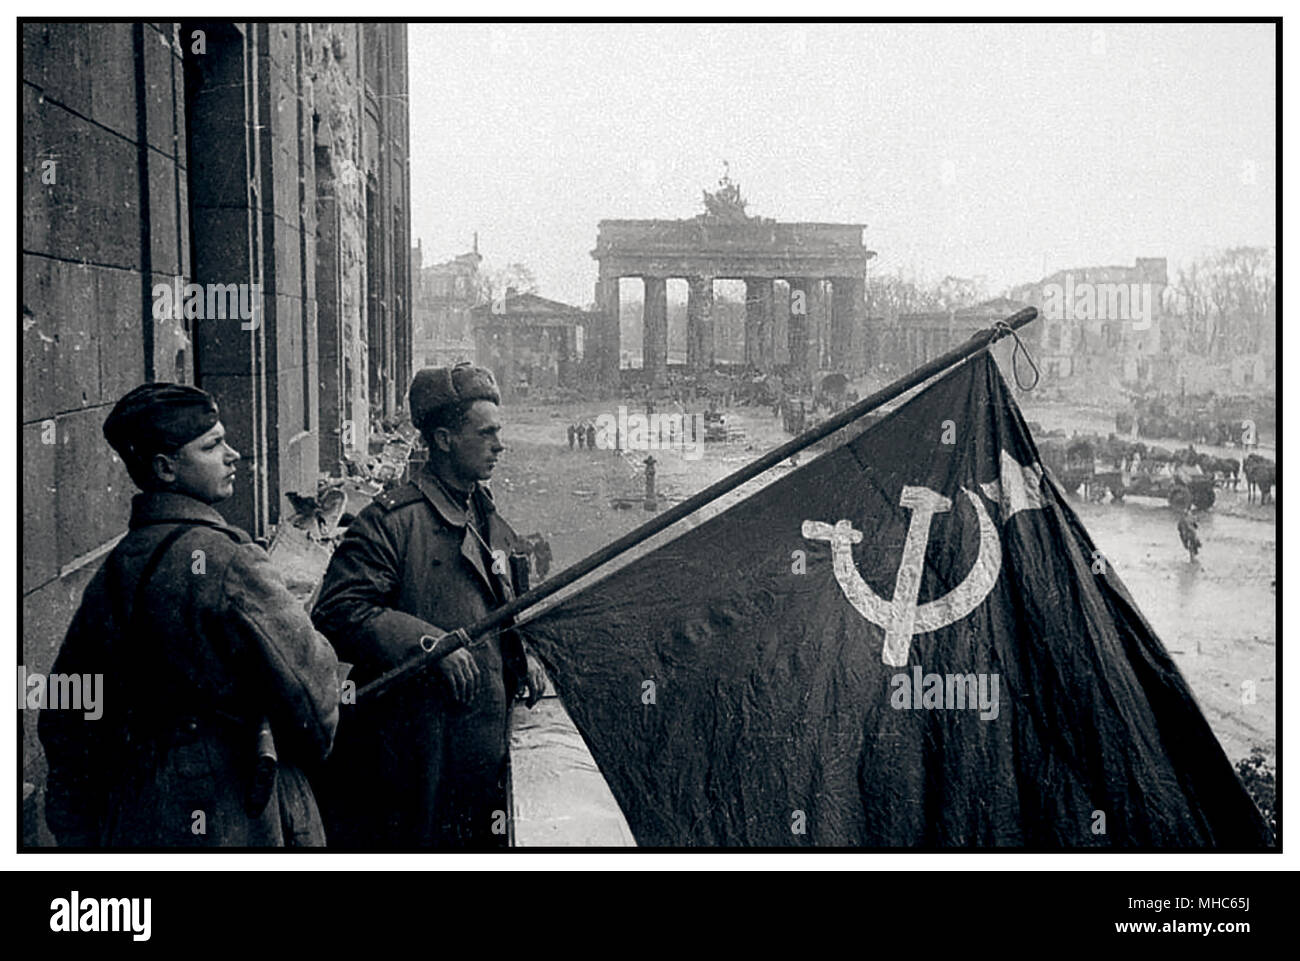 1945 les soldats russes de la Seconde Guerre mondiale tiennent fièrement leur symbole national le drapeau du marteau et de la faucille dans la victoire Berlin Allemagne la porte de Brandebourg se trouve dans un état très piqué et meurtris. Autrefois symbole de la fierté allemande, ici en mai 1945, il se trouve presque en ruines Banque D'Images